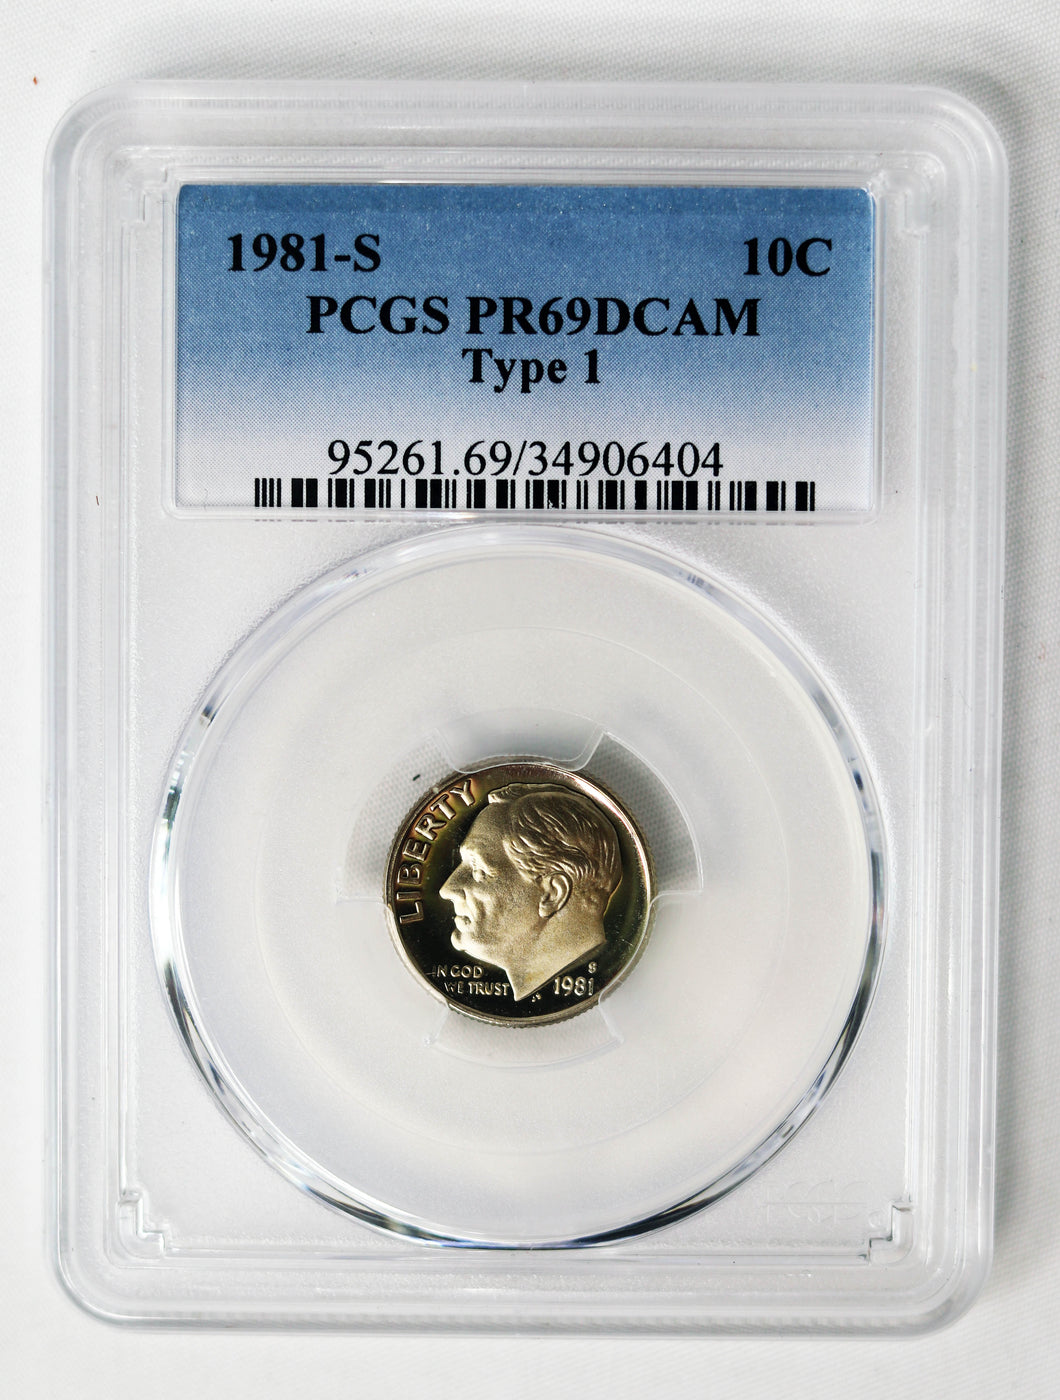 Coin US 10c - 1981-S - Type 1 - PCGS - PR69DCAM - US Dime - San Francisco Mint